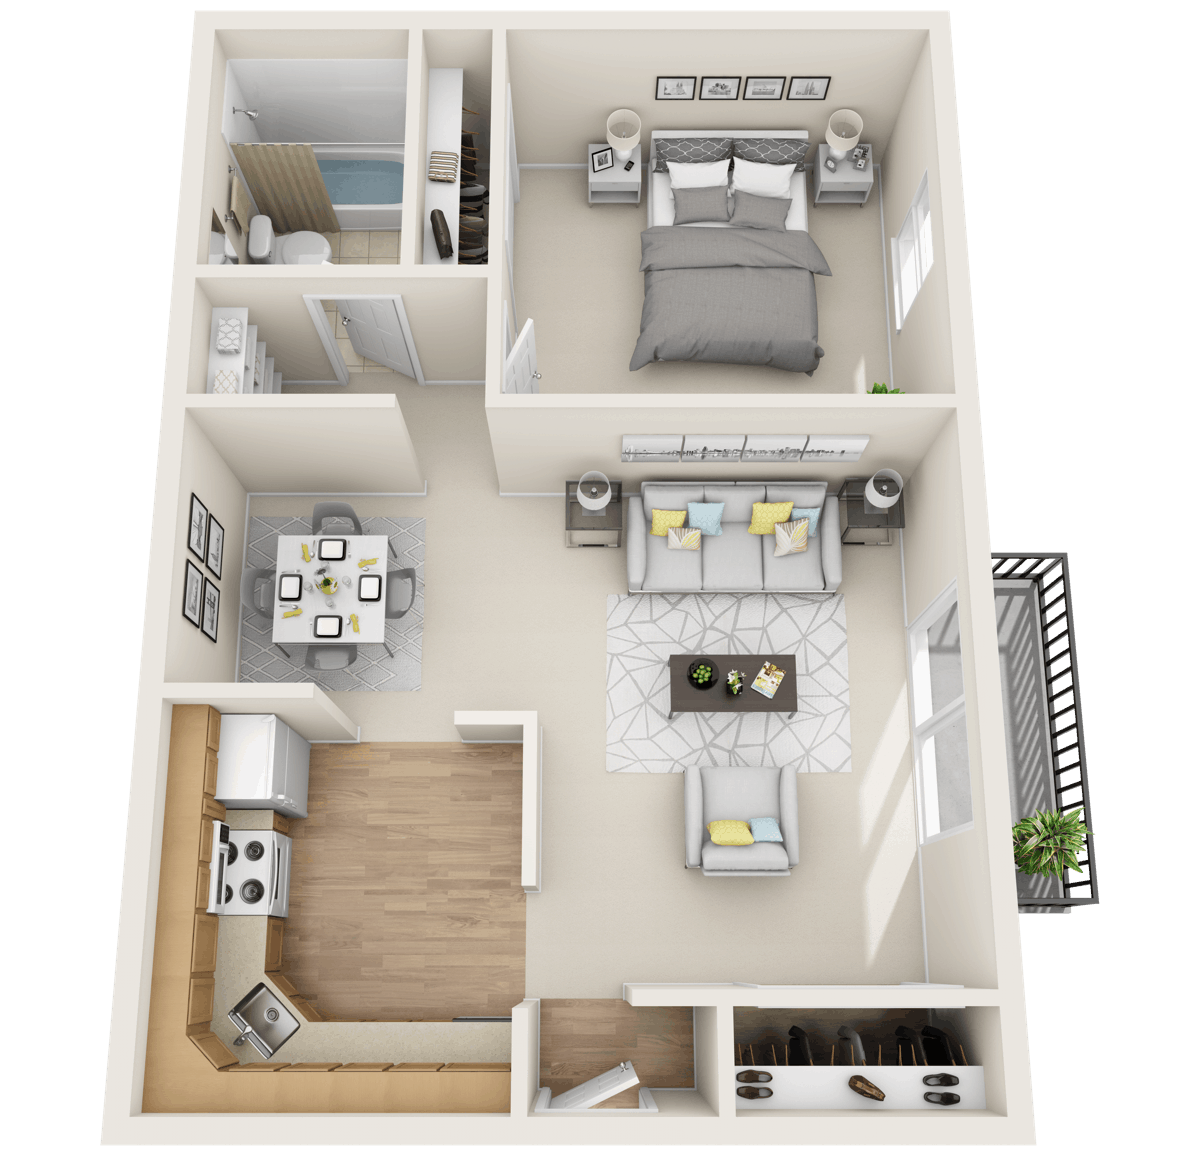 1 Bedroom Suite - Shoreham Park Apartment floor plan in Avon Lake, OH